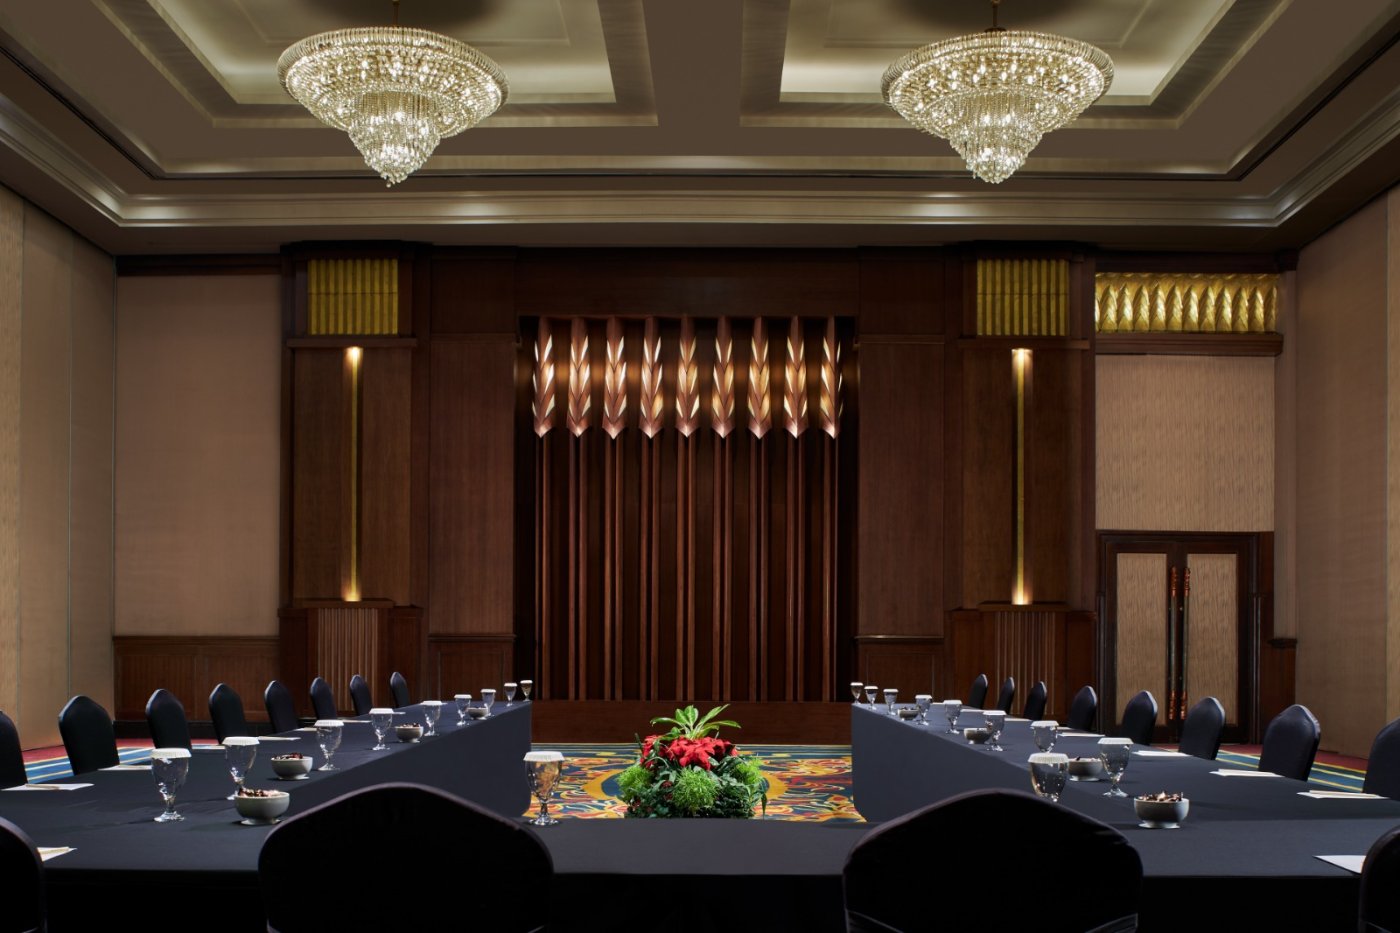 el meeting room